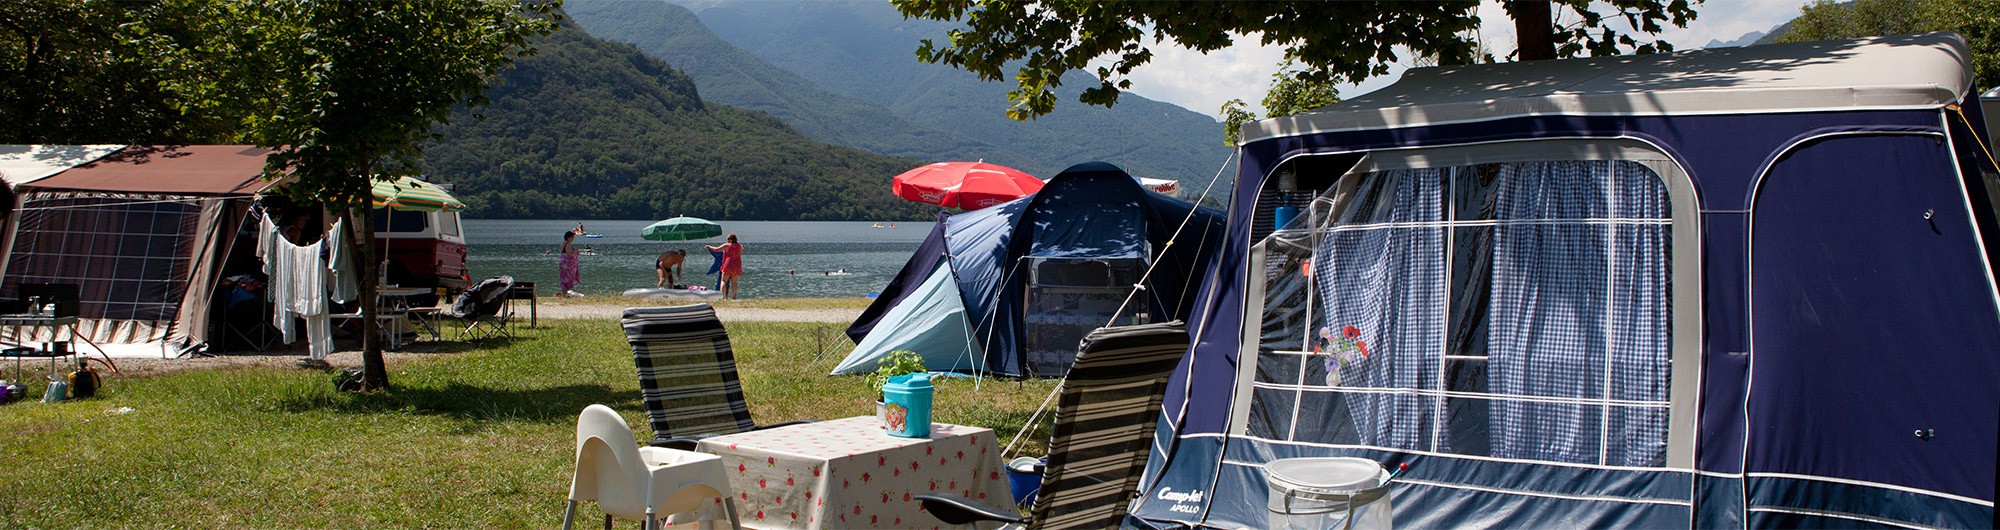 Camping in Verbania